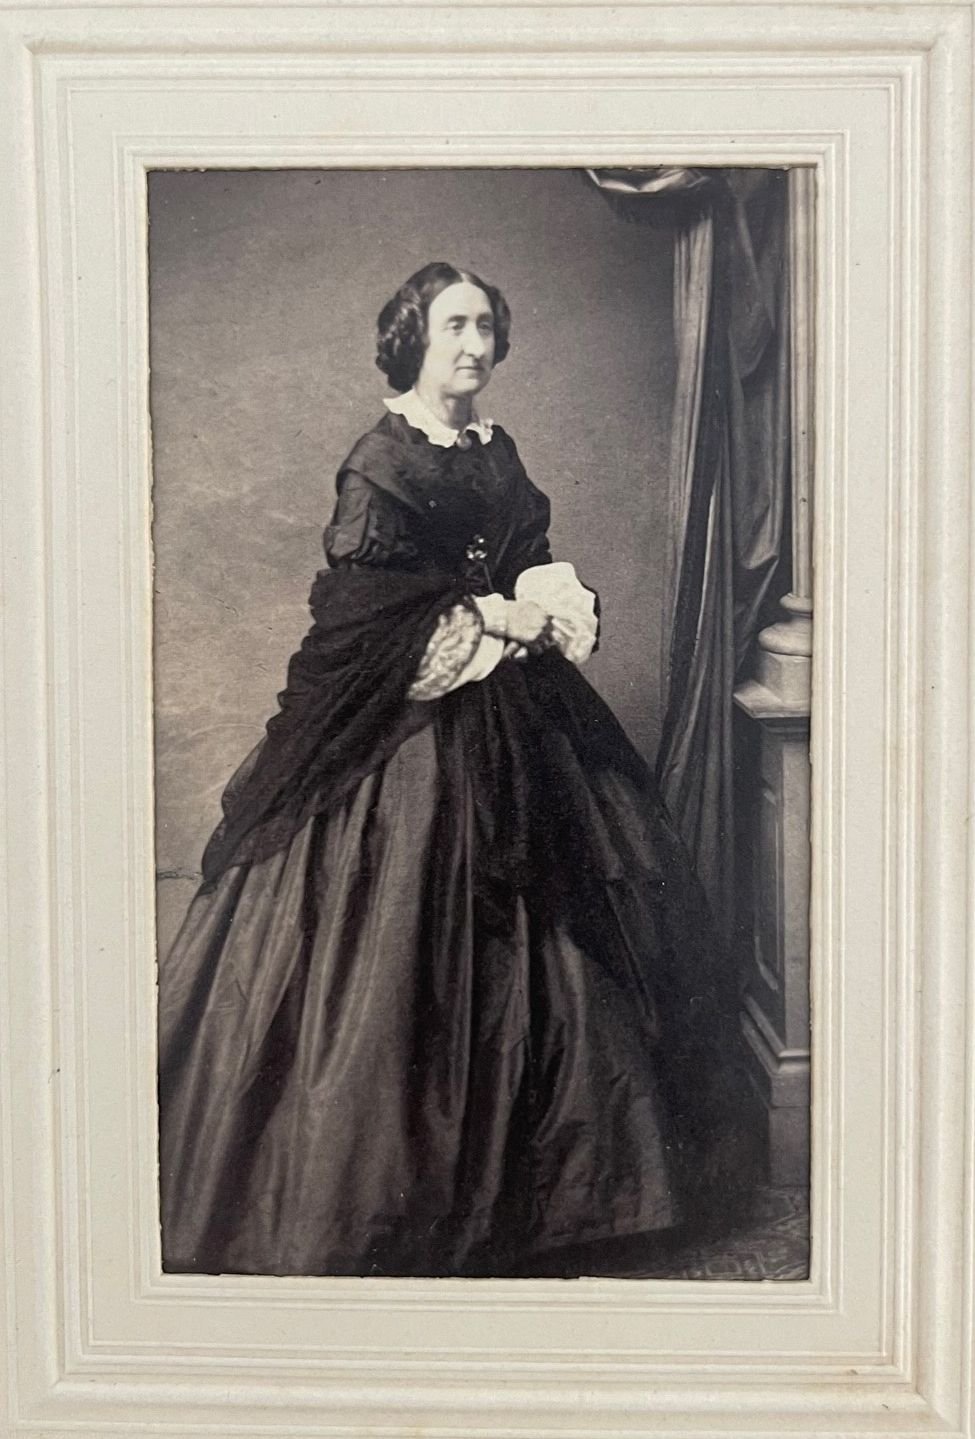 Fotografie, P. Weisbrod, Ottilie Gräfin zu Solms-Braunfels, ca. 1865. (Taunus-Rhein-Main - Regionalgeschichtliche Sammlung Dr. Stefan Naas CC BY-NC-SA)